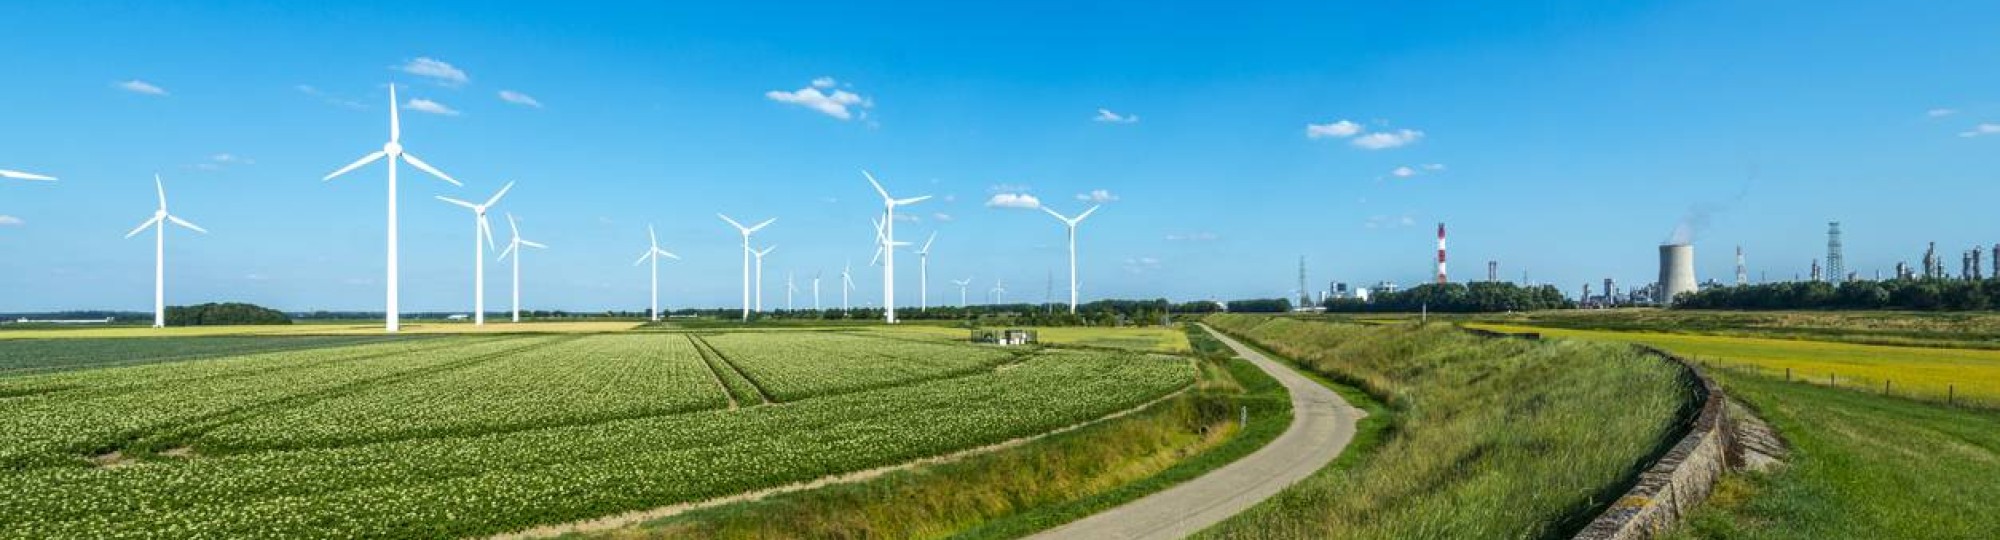 Nederlands landschap met blauwe lucht, windmolens en energiecentrale